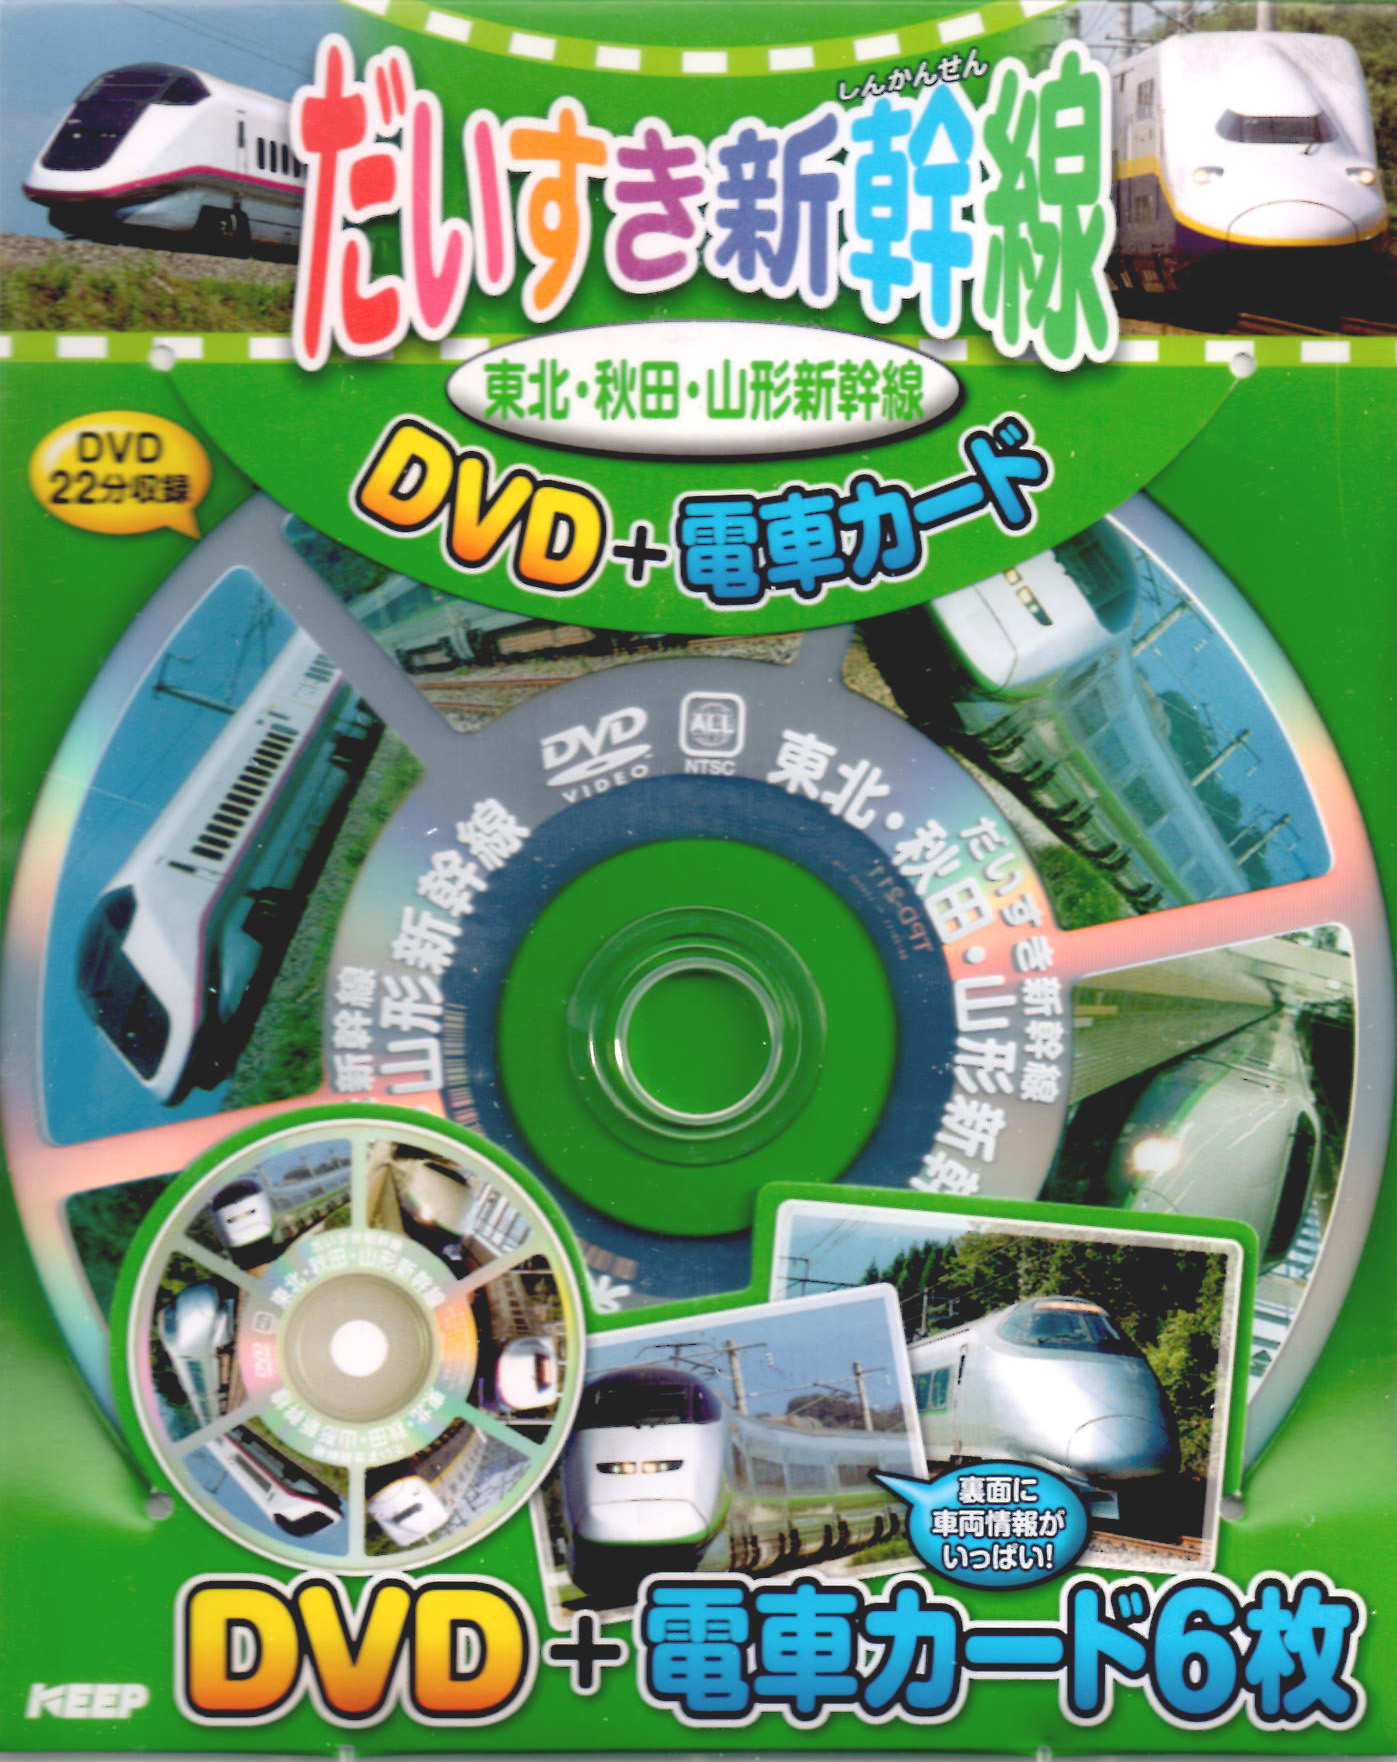 だいすき新幹線 東北・秋田・山形新幹線 (DVD+電車カード)